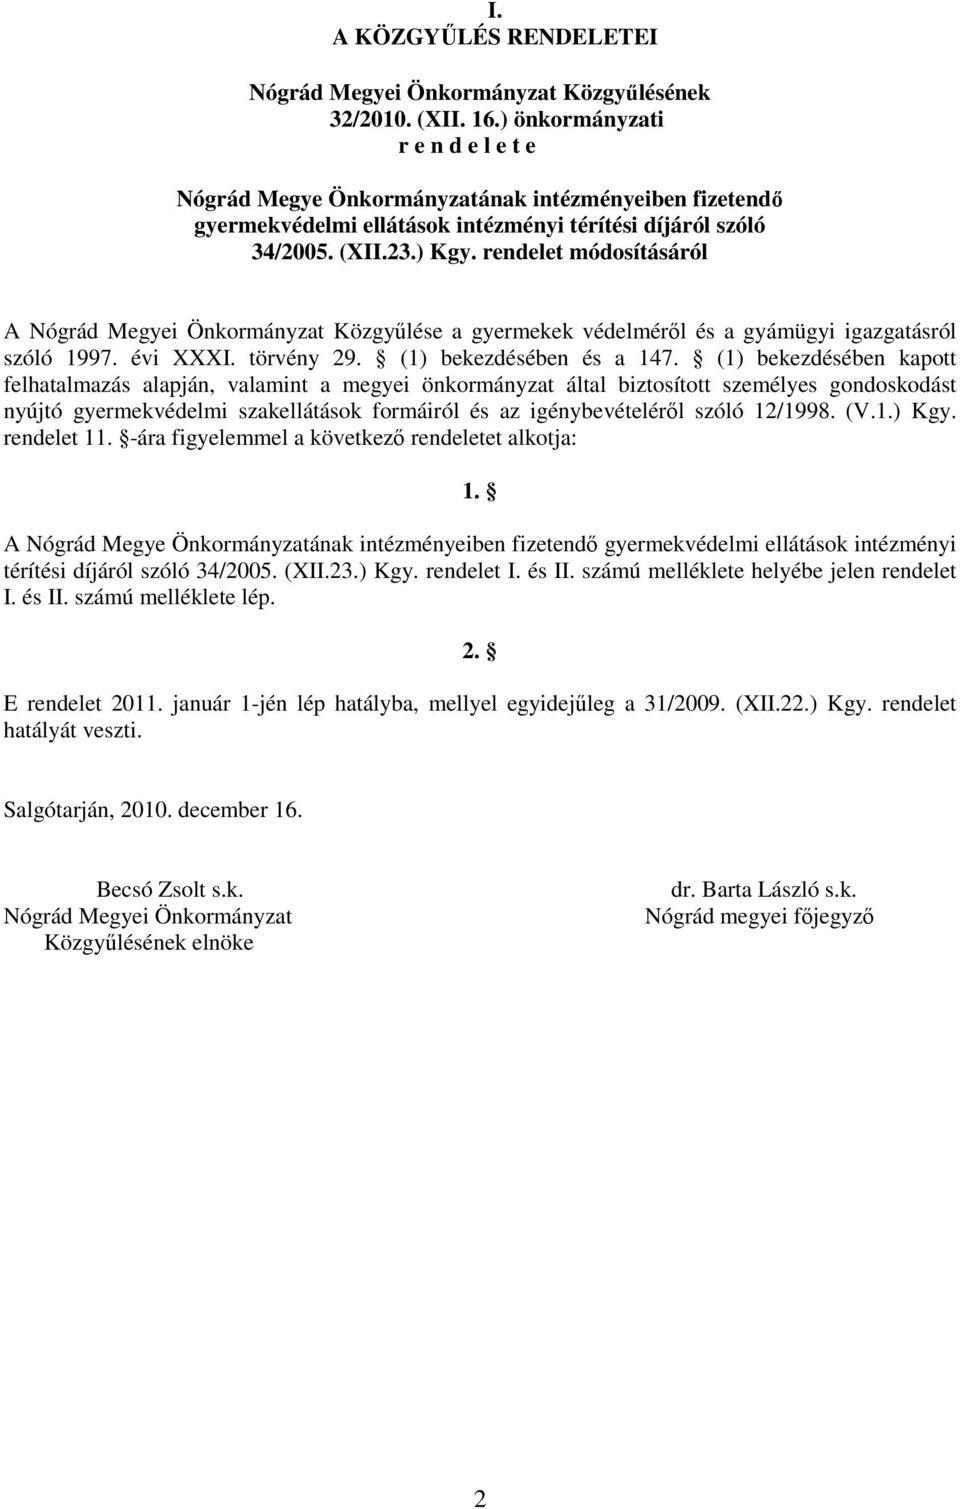 rendelet módosításáról A Nógrád Megyei Önkormányzat Közgyűlése a gyermekek védelméről és a gyámügyi igazgatásról szóló 1997. évi XXXI. törvény 29. (1) bekezdésében és a 147.